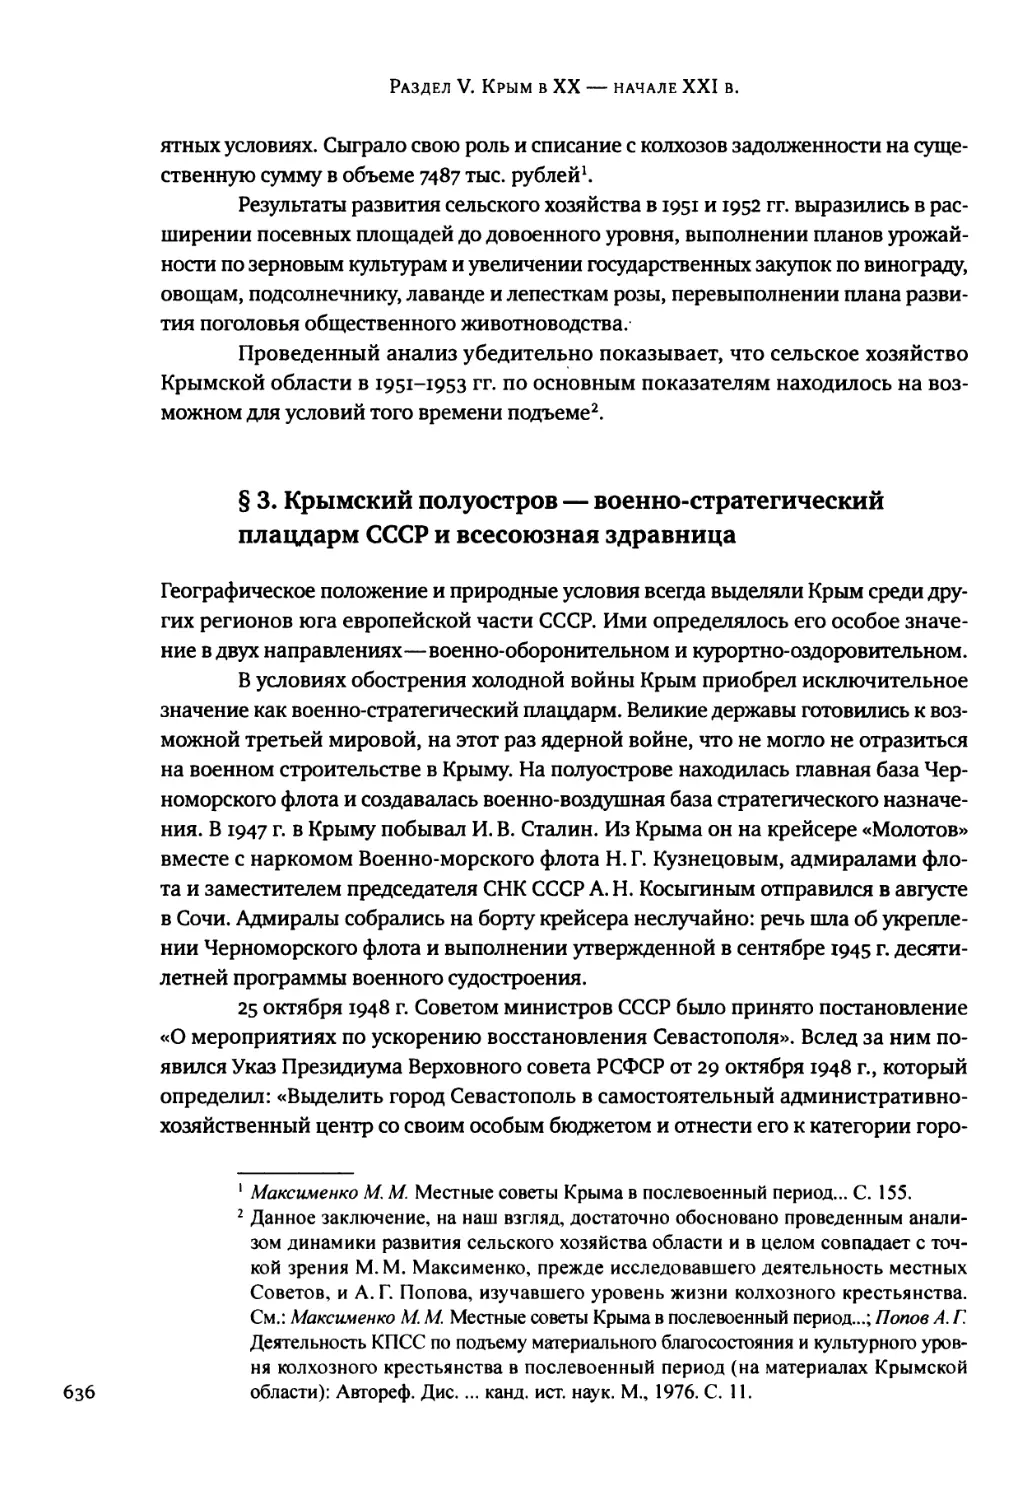 § 3. Крымский полуостров — военно-стратегический плацдарм СССР и всесоюзная здравница